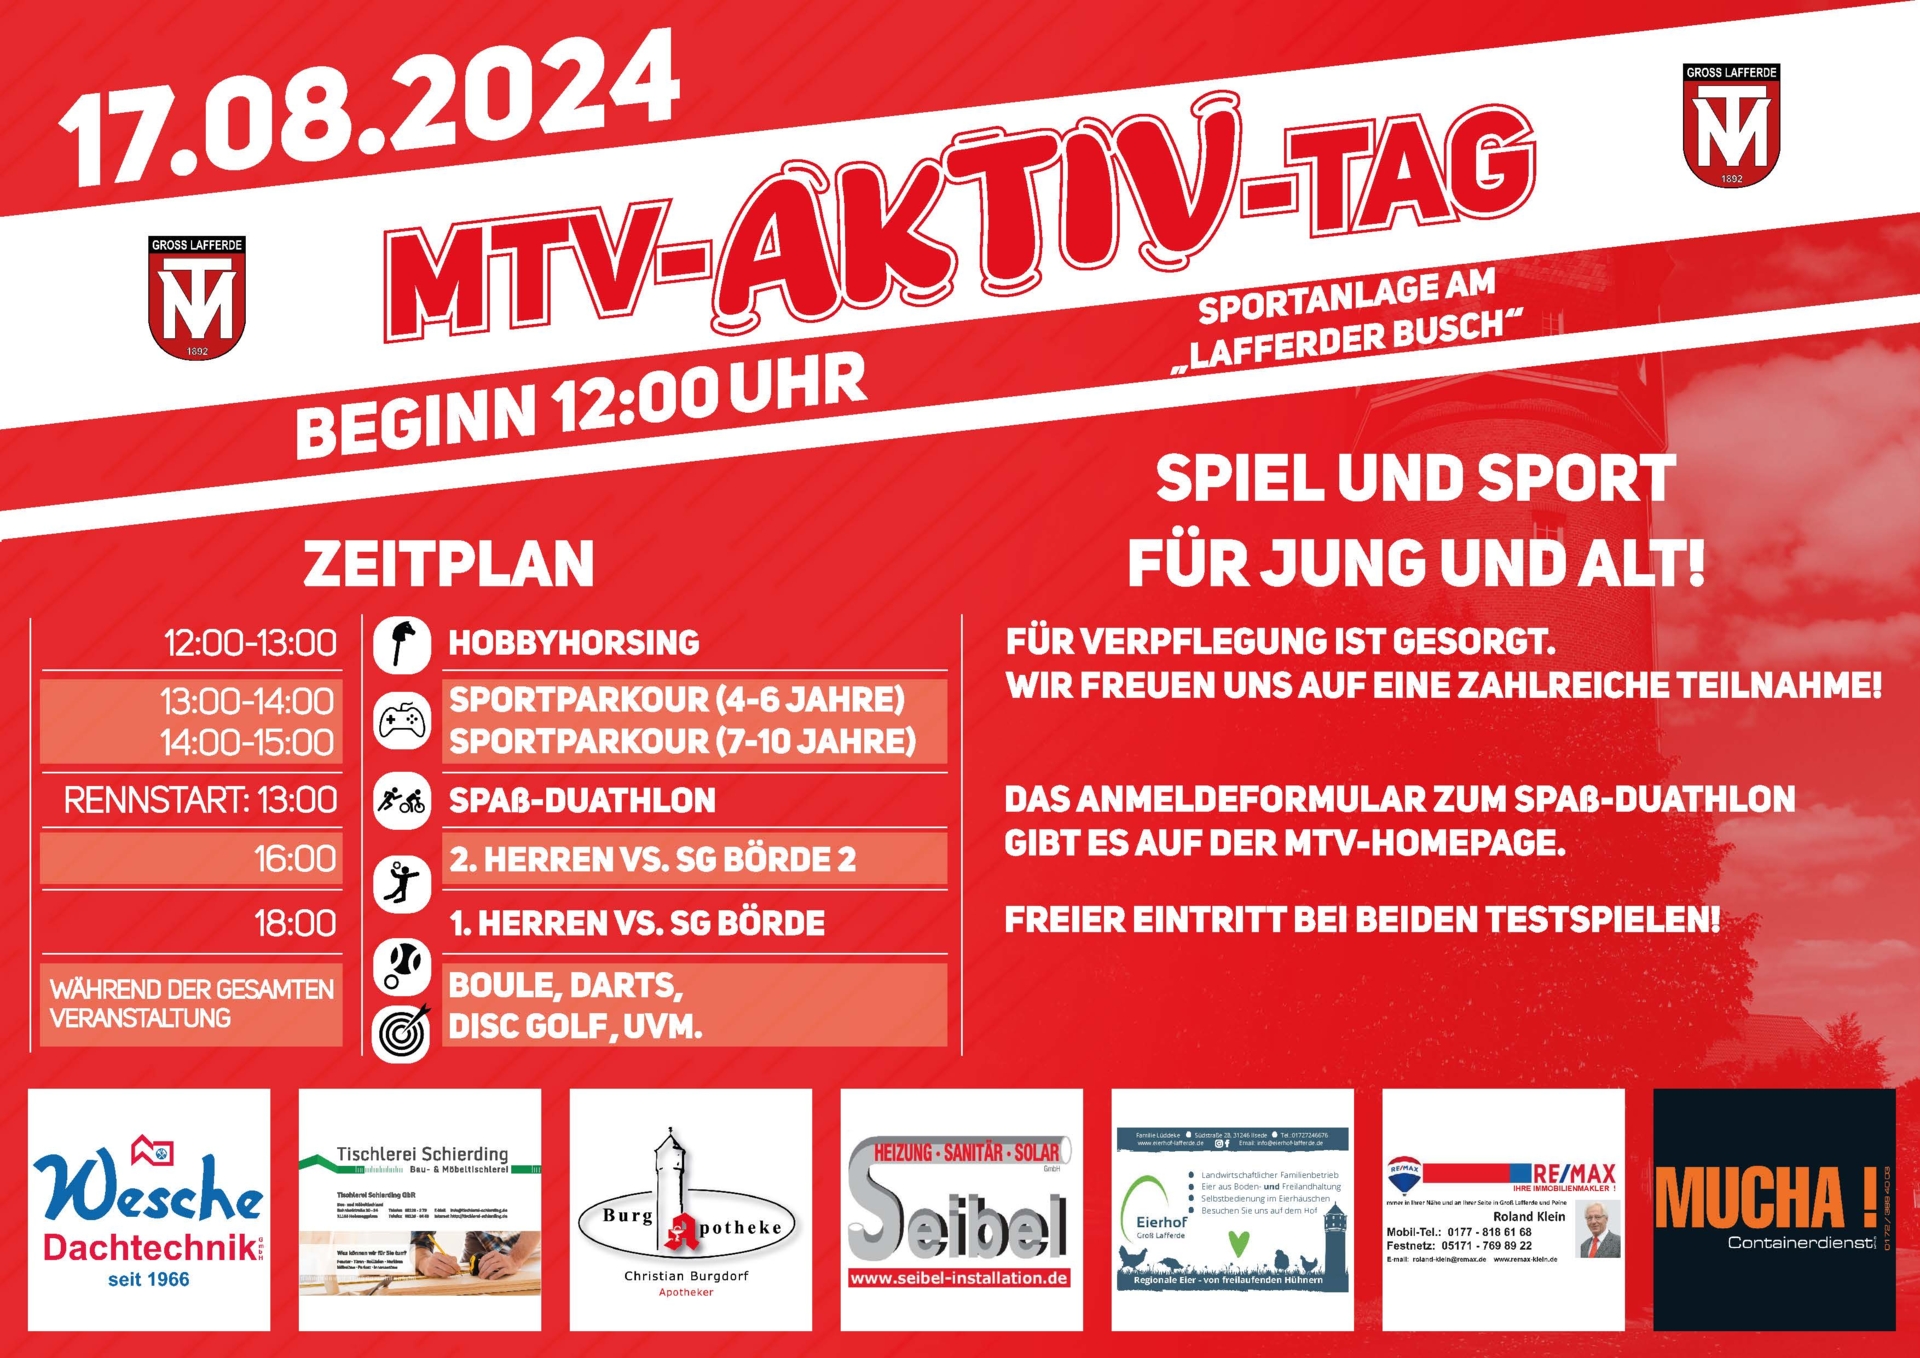 MTV-Aktiv-Tag